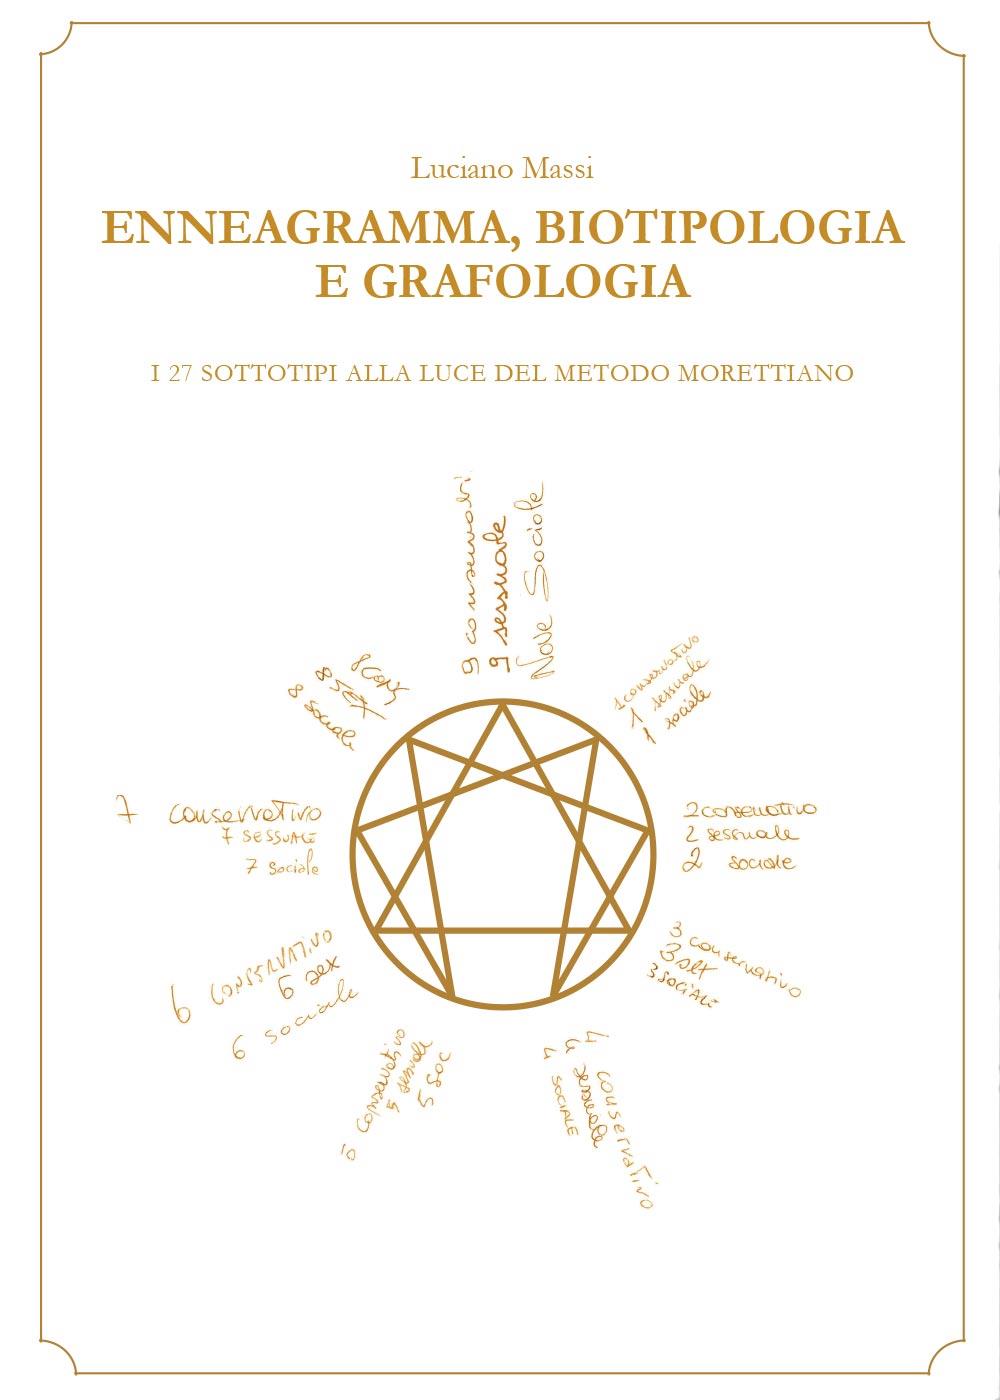 Enneagramma, biotipologia e grafologia